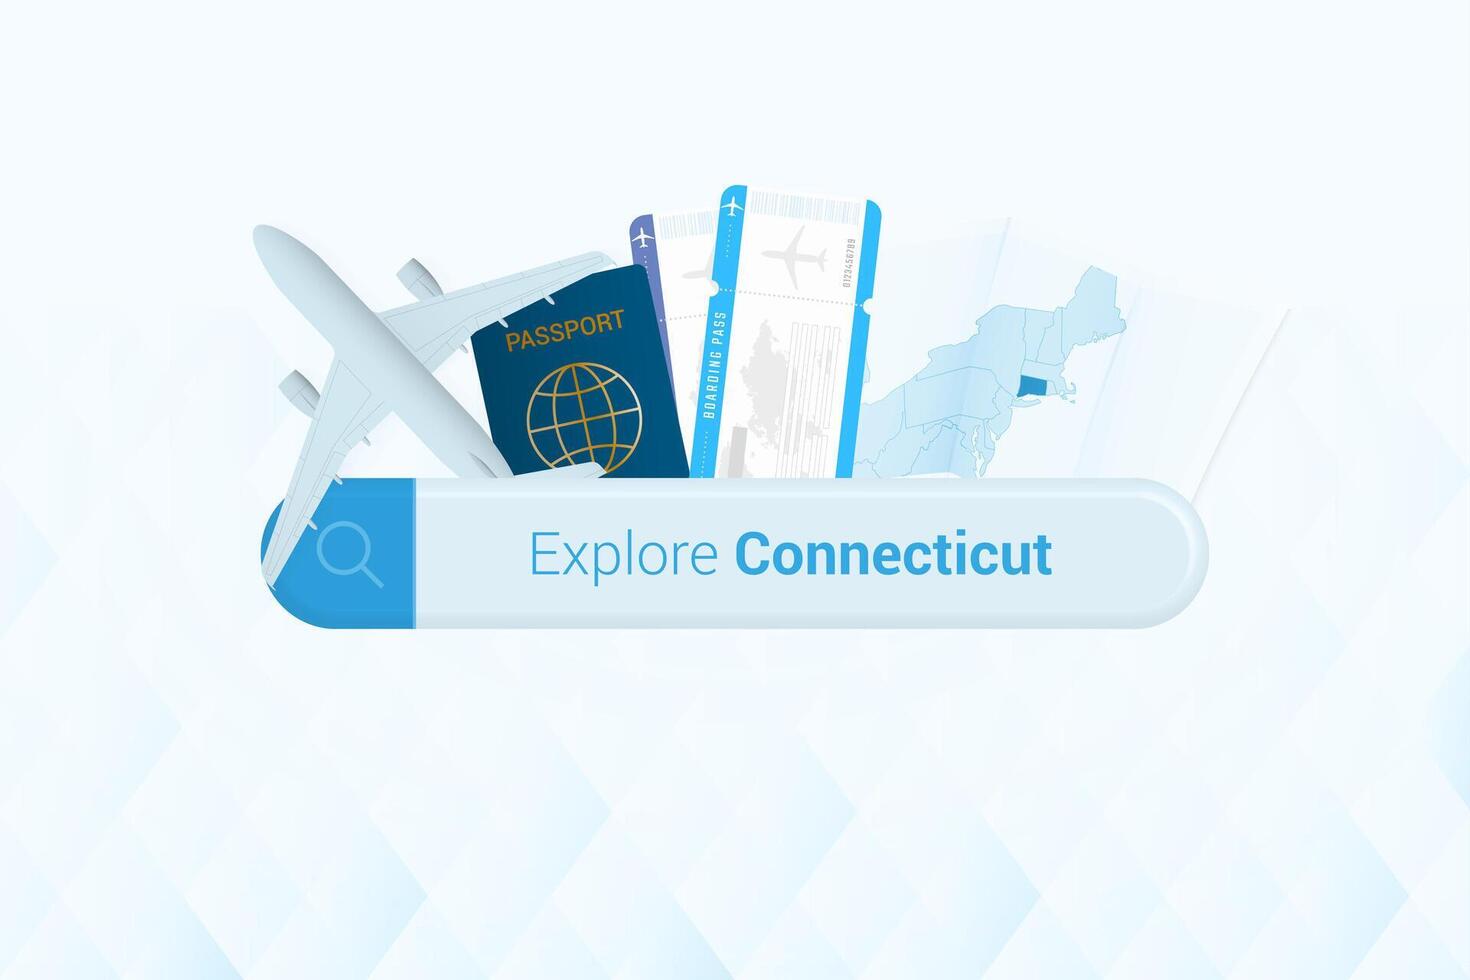 recherche des billets à Connecticut ou Voyage destination dans Connecticut. recherche bar avec avion, passeport, embarquement passer, des billets et carte. vecteur